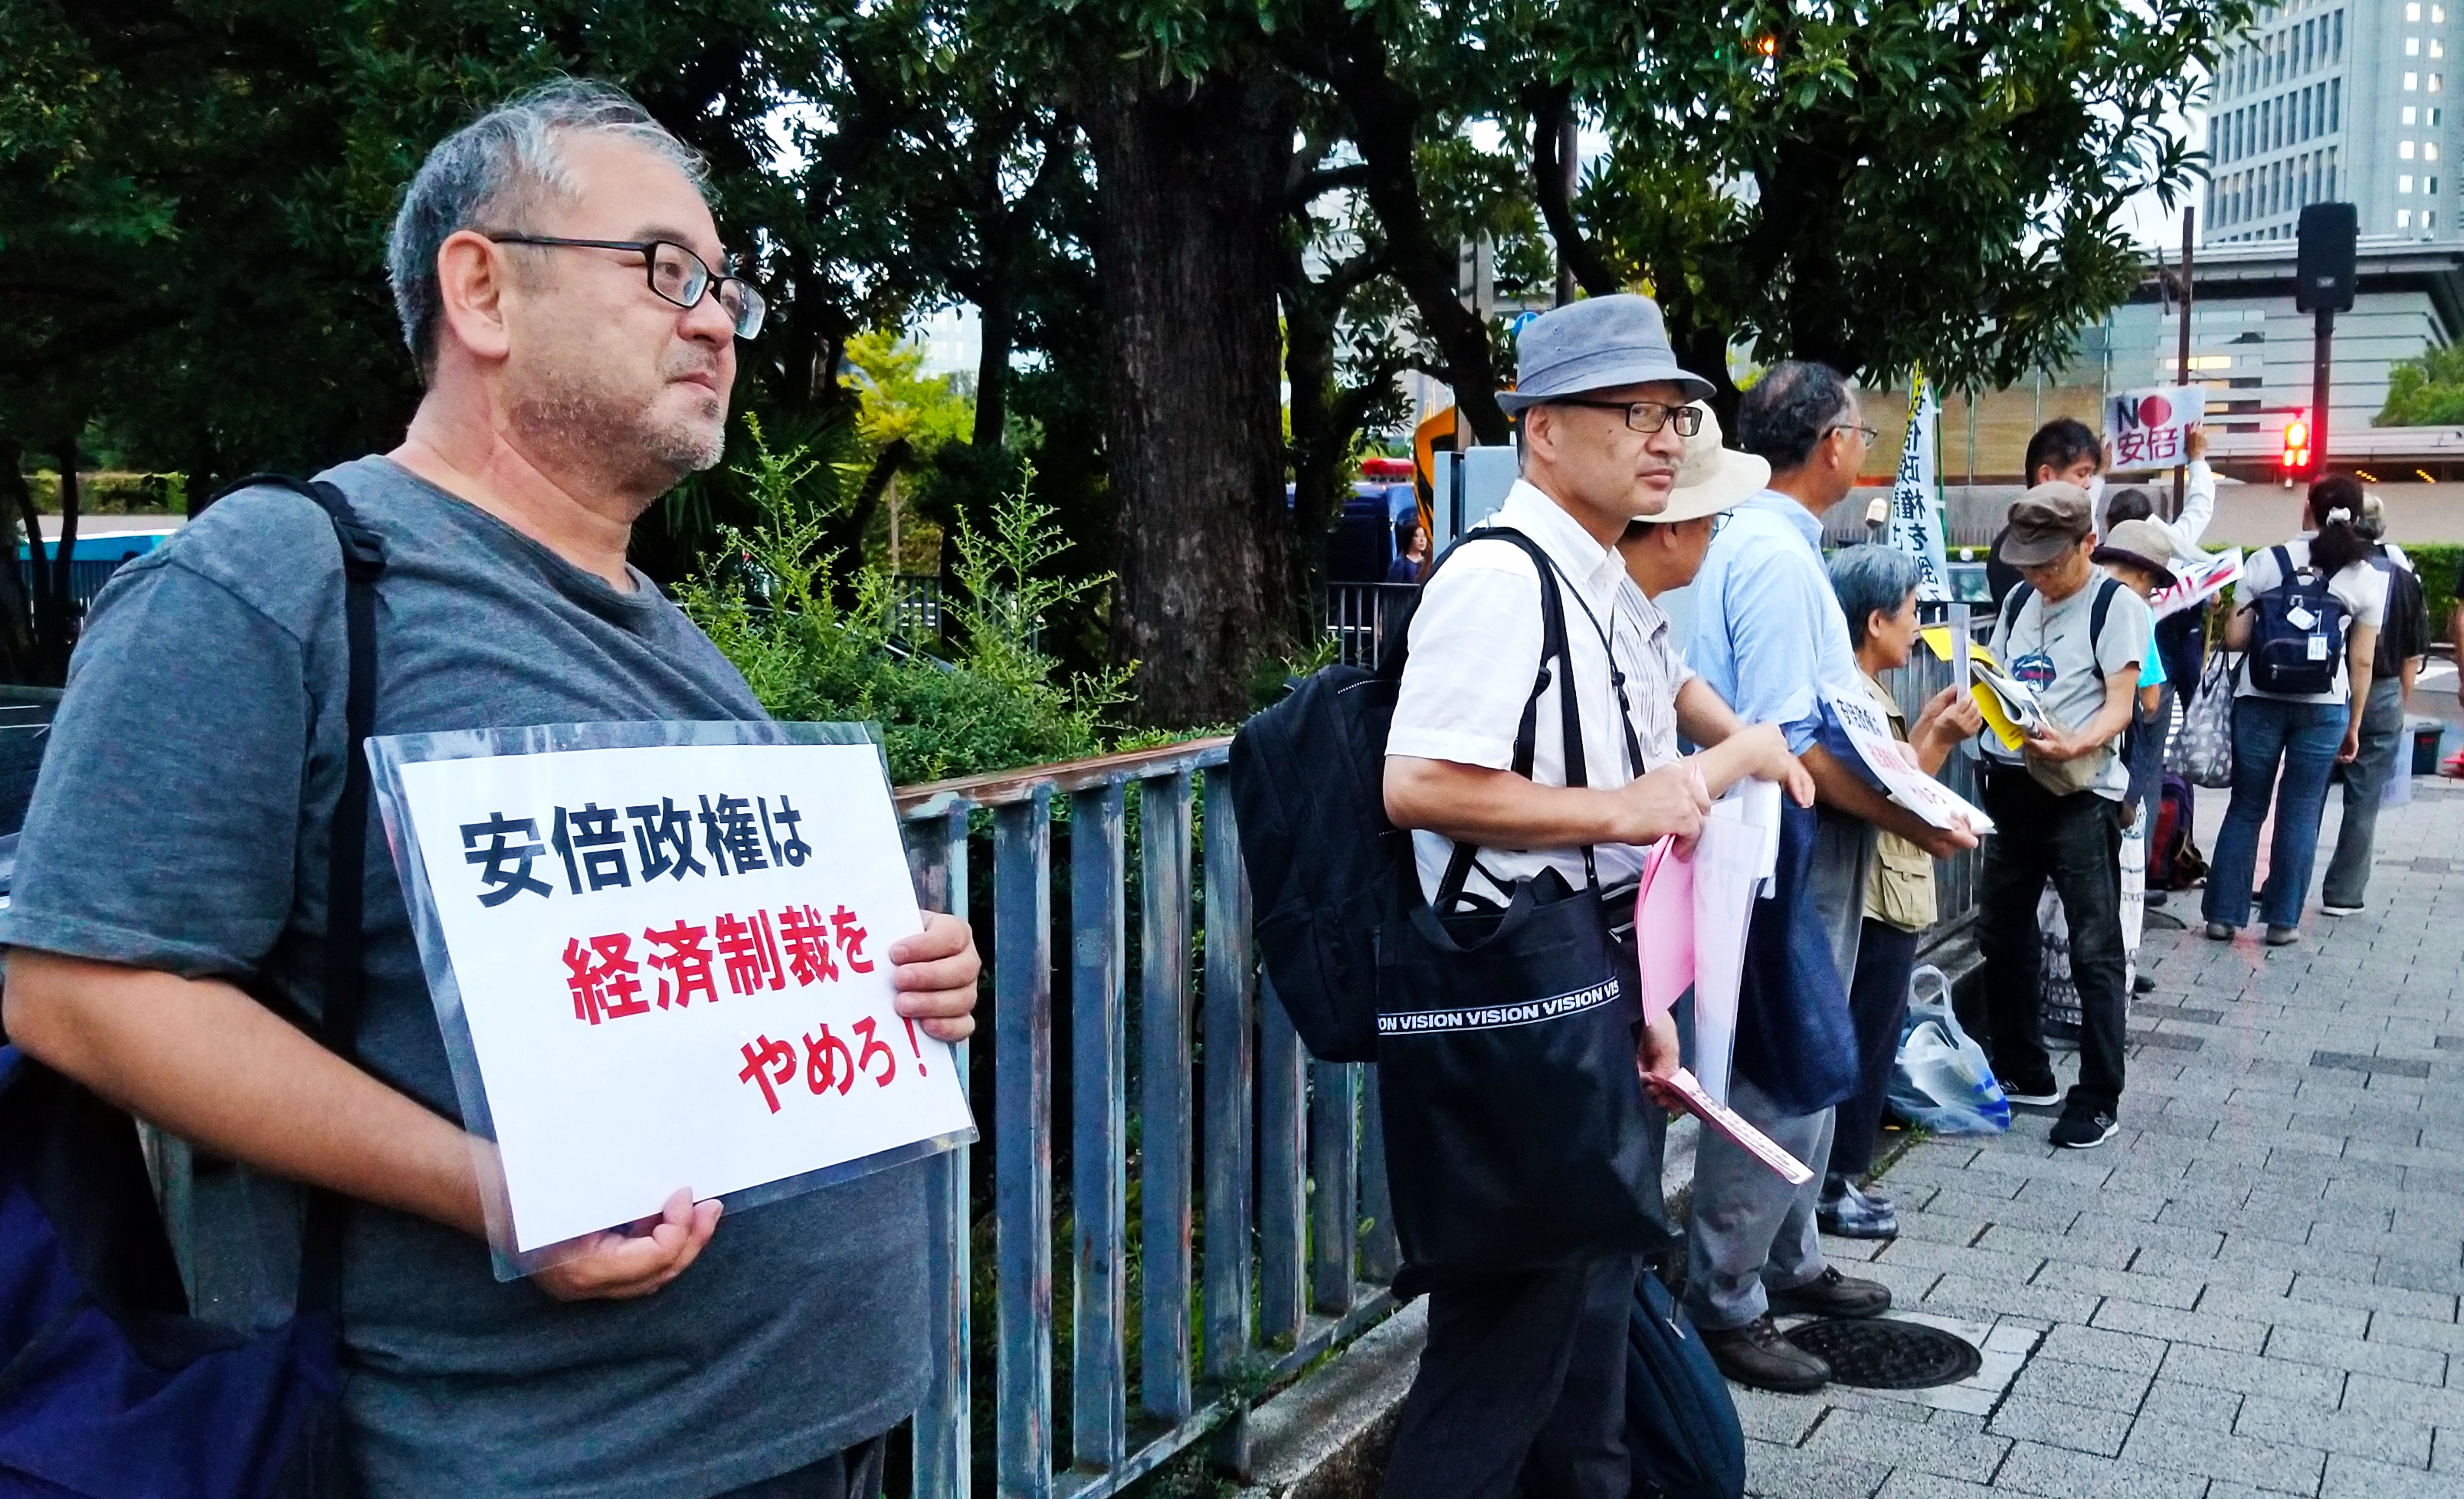 한국의 ‘광복절’이자 일본의 ‘종전의날’이었던 지난 15일 일본 시민단체 회원들이 아베 정권의 한국에 대한 무역보복 조치에 항의해 총리관저(오른쪽에 보이는 건물) 앞에서 시위를 하고 있다.